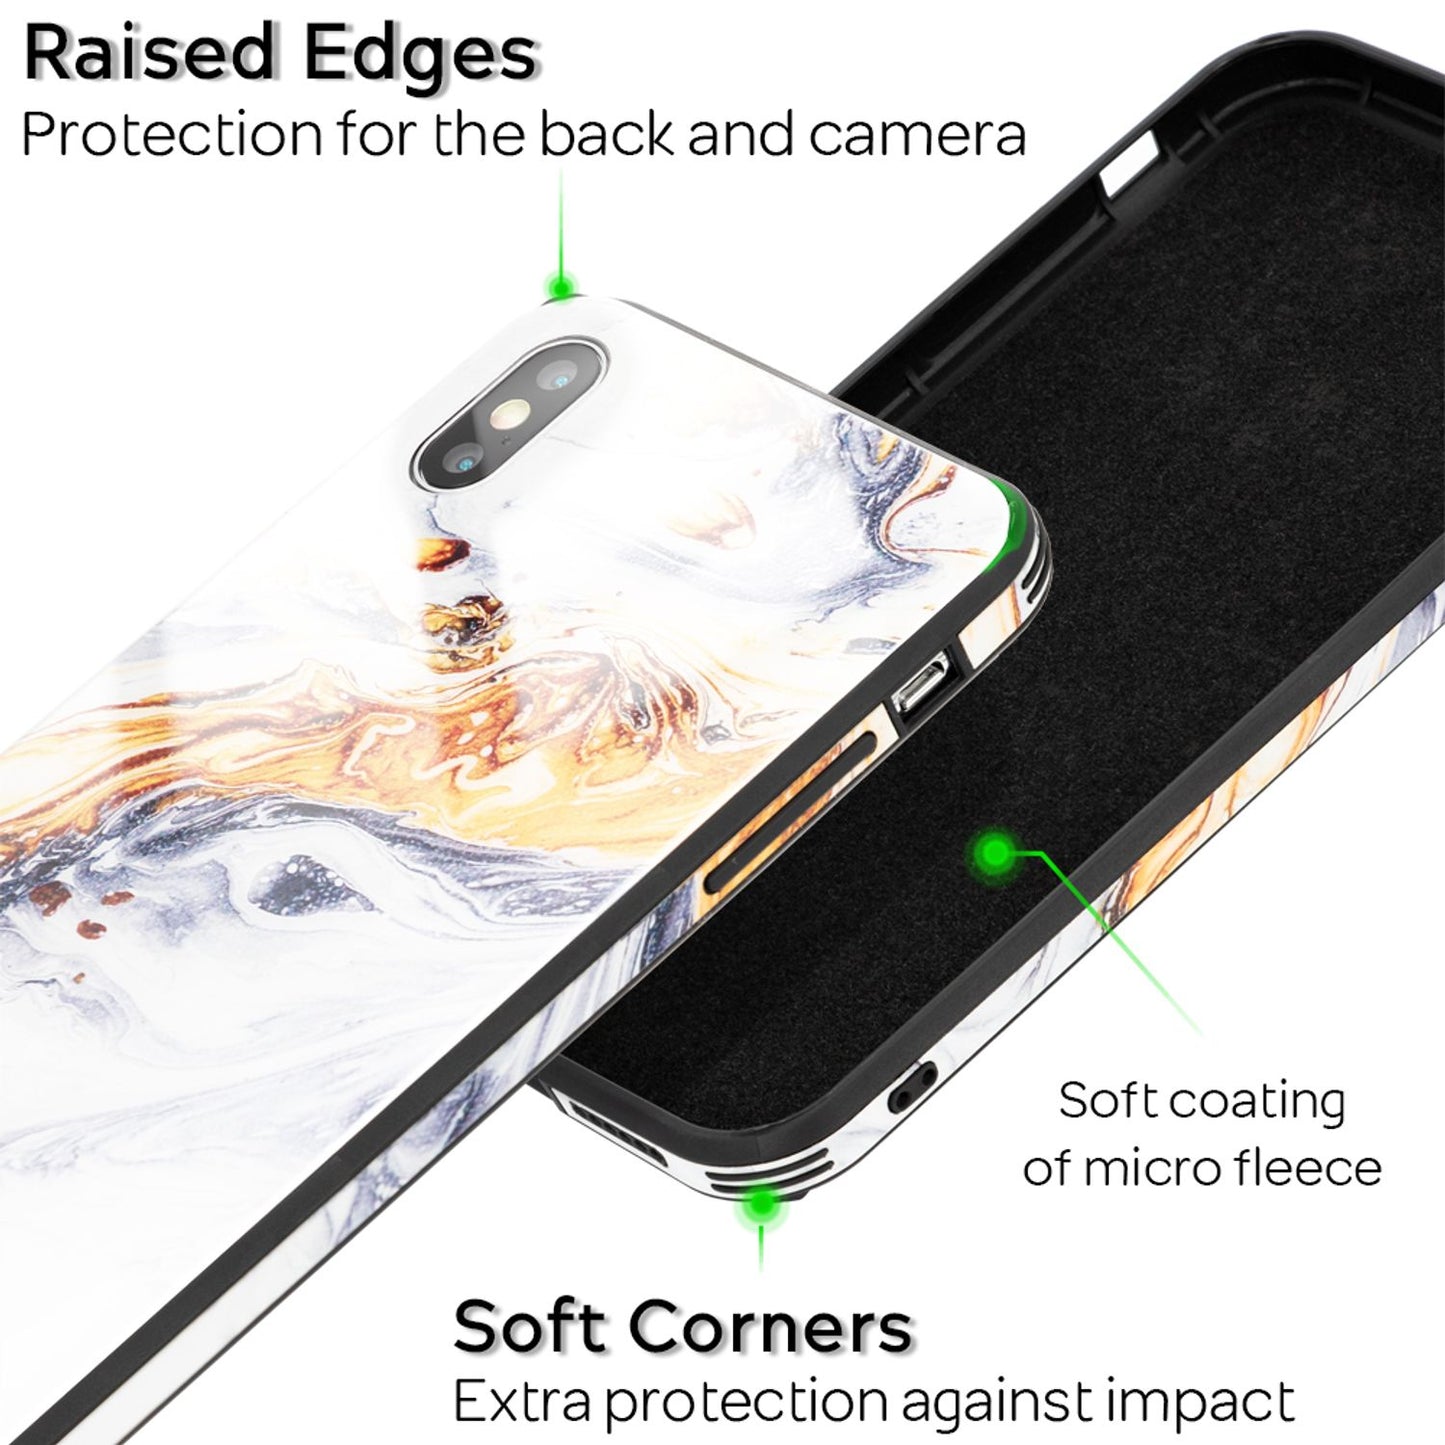 NALIA Handy Hülle für iPhone X / XS, Hartglas Marmor Design Schutz Case Cover